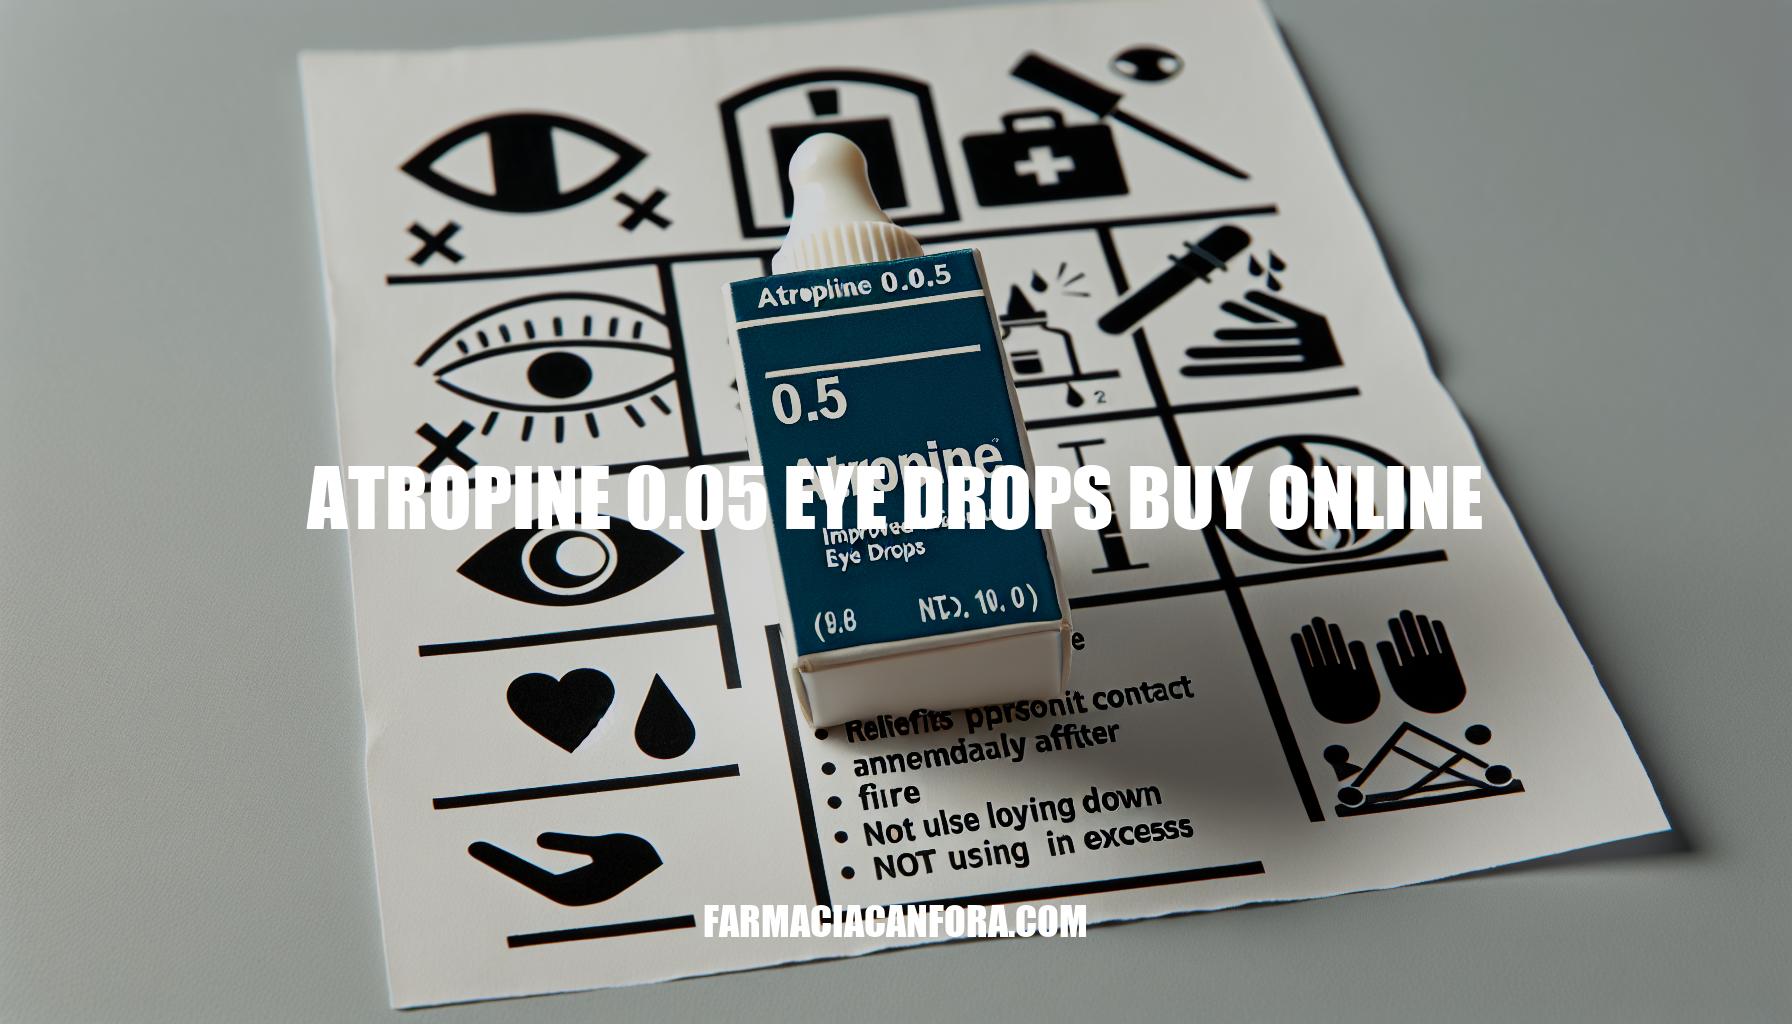 Buy Atropine 0.05 Eye Drops Online: Benefits and Precautions